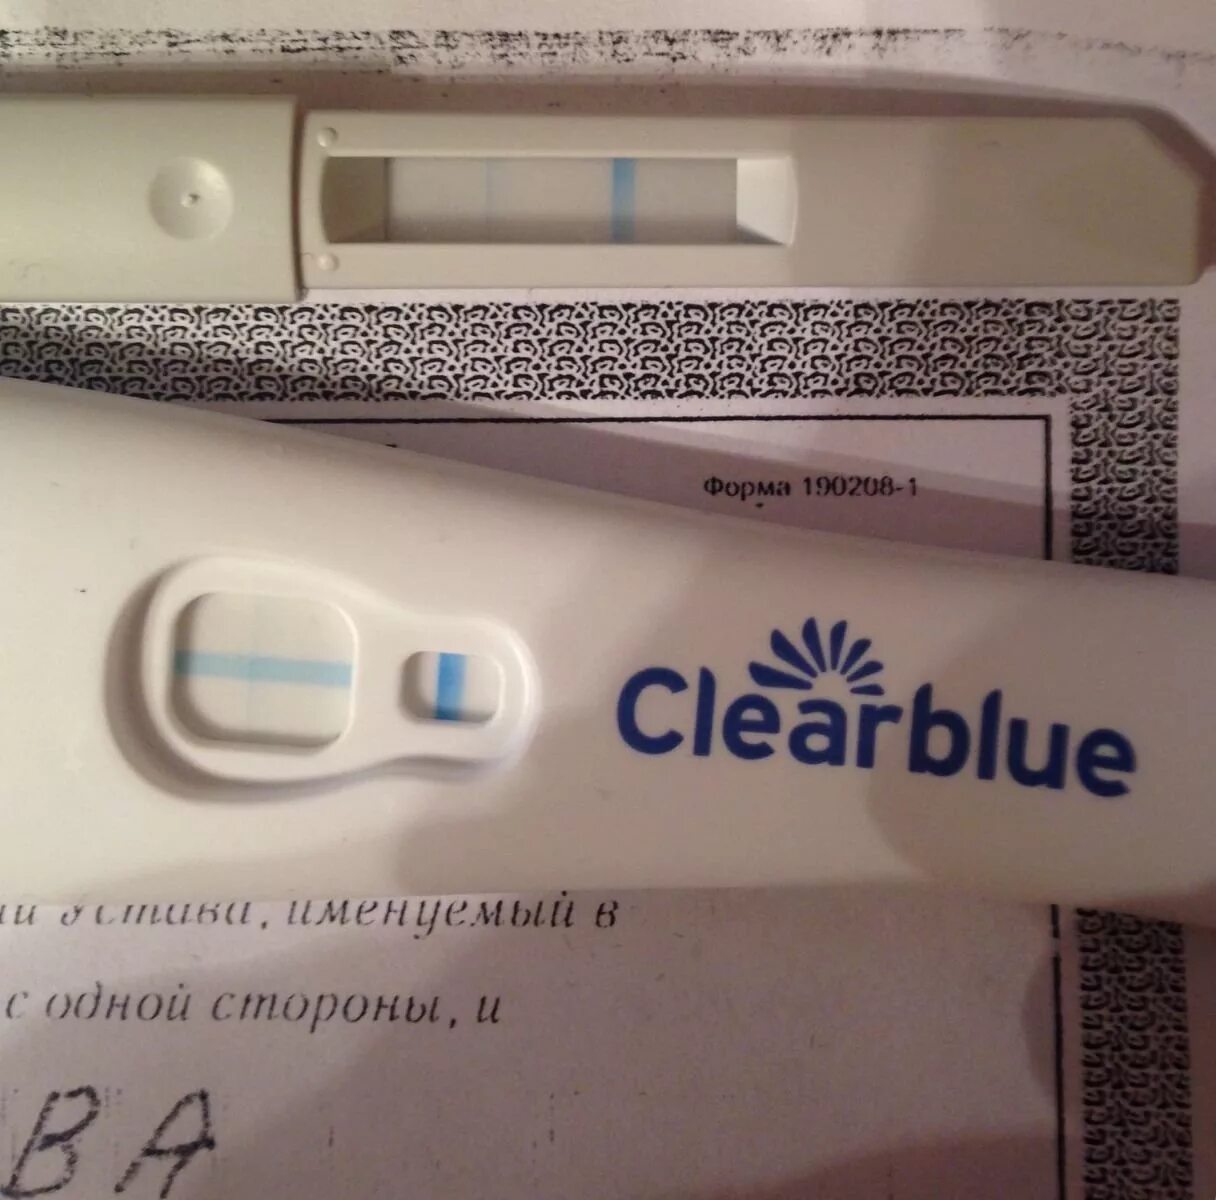 Клеар блю тест на беременность до задержки. Тест на беременность Clearblue за 5 дней до задержки. Струйный тест клеар Блю за 5 дней до задержки. Клеар Блю тест на беременность 5 дней задержки. Тест клиаблу за 5 дней до задержки положительный.